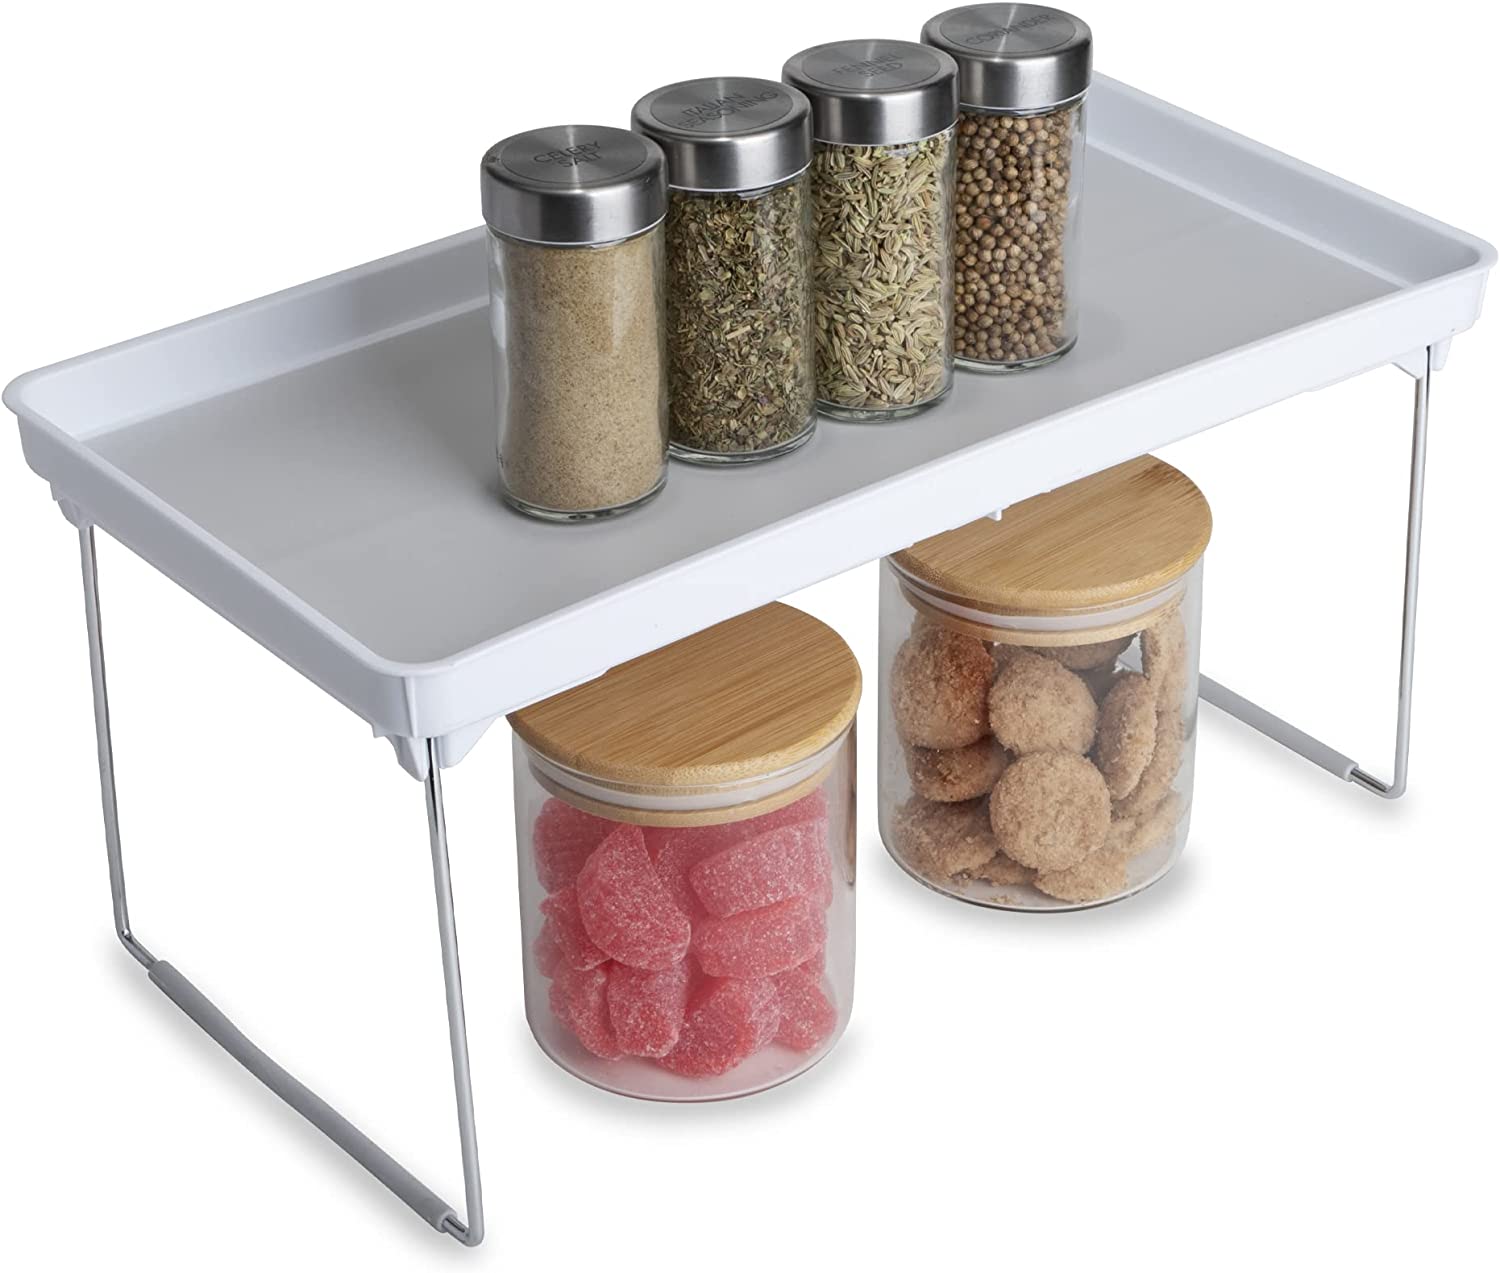 https://www.shopsmartdesign.com/cdn/shop/products/stackable-cabinet-shelf-smart-design-kitchen-8001821-incrementing-number-883014.jpg?v=1679335965